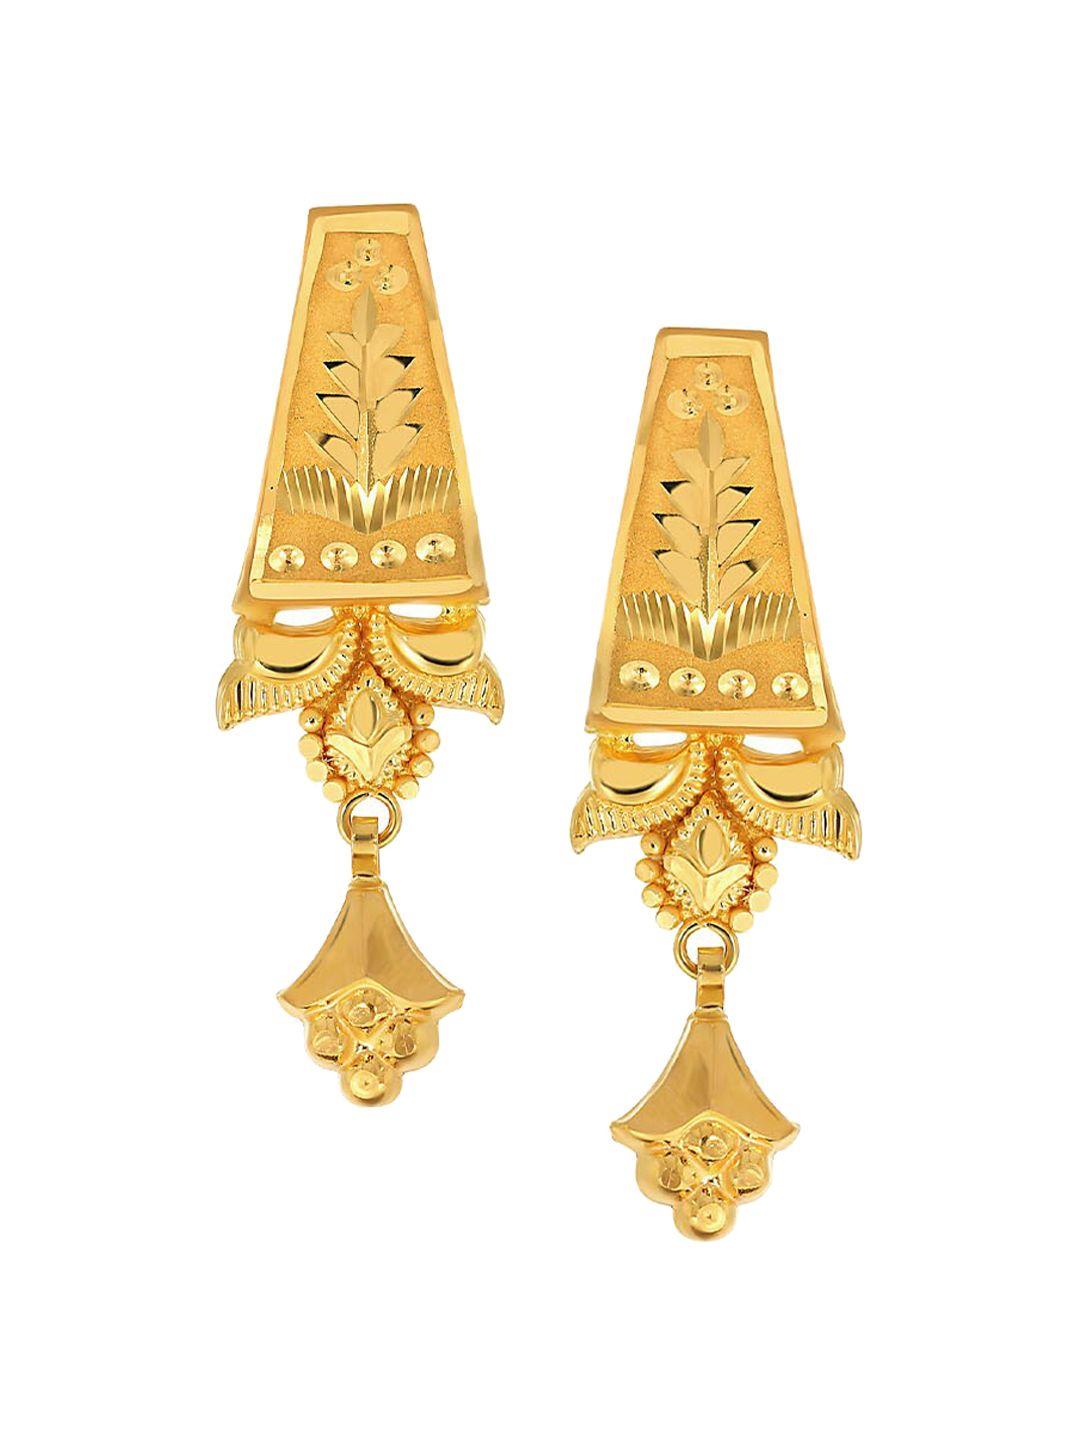 senco-leafy-trigon-22kt-gold-drop-earrings-1.1gm